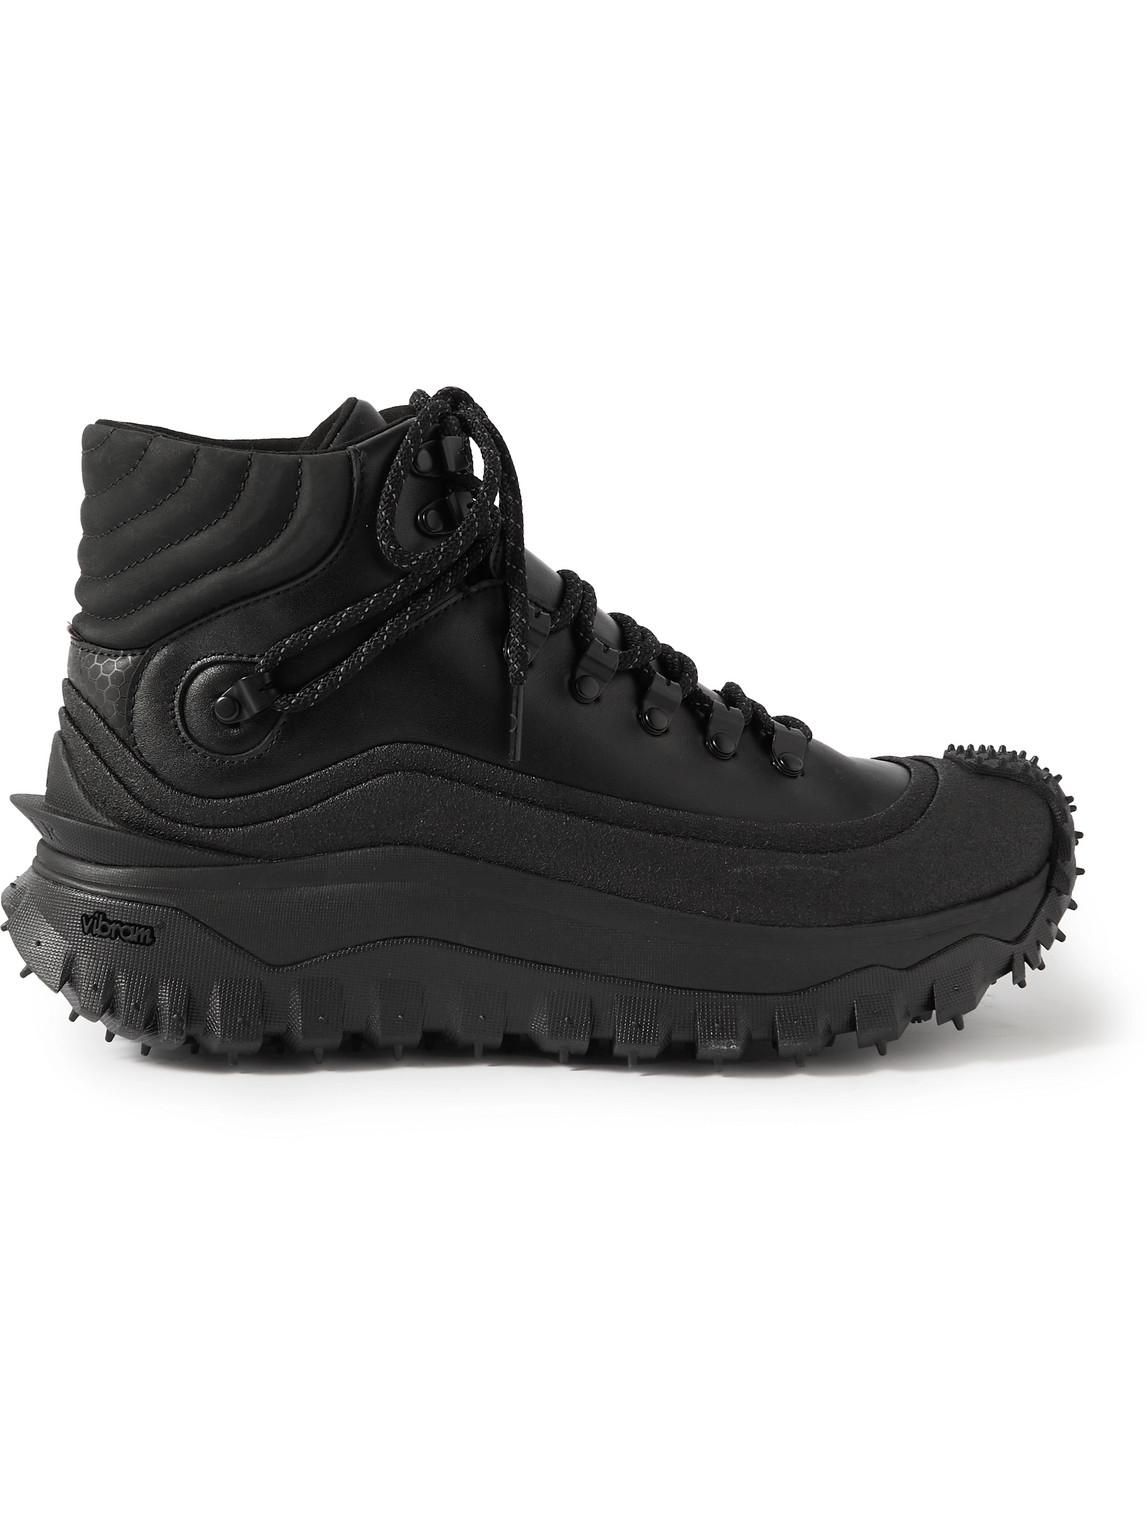 Moncler - Trailgrip GTX Leather Hiking Boots - Men - Black - EU 45 von Moncler